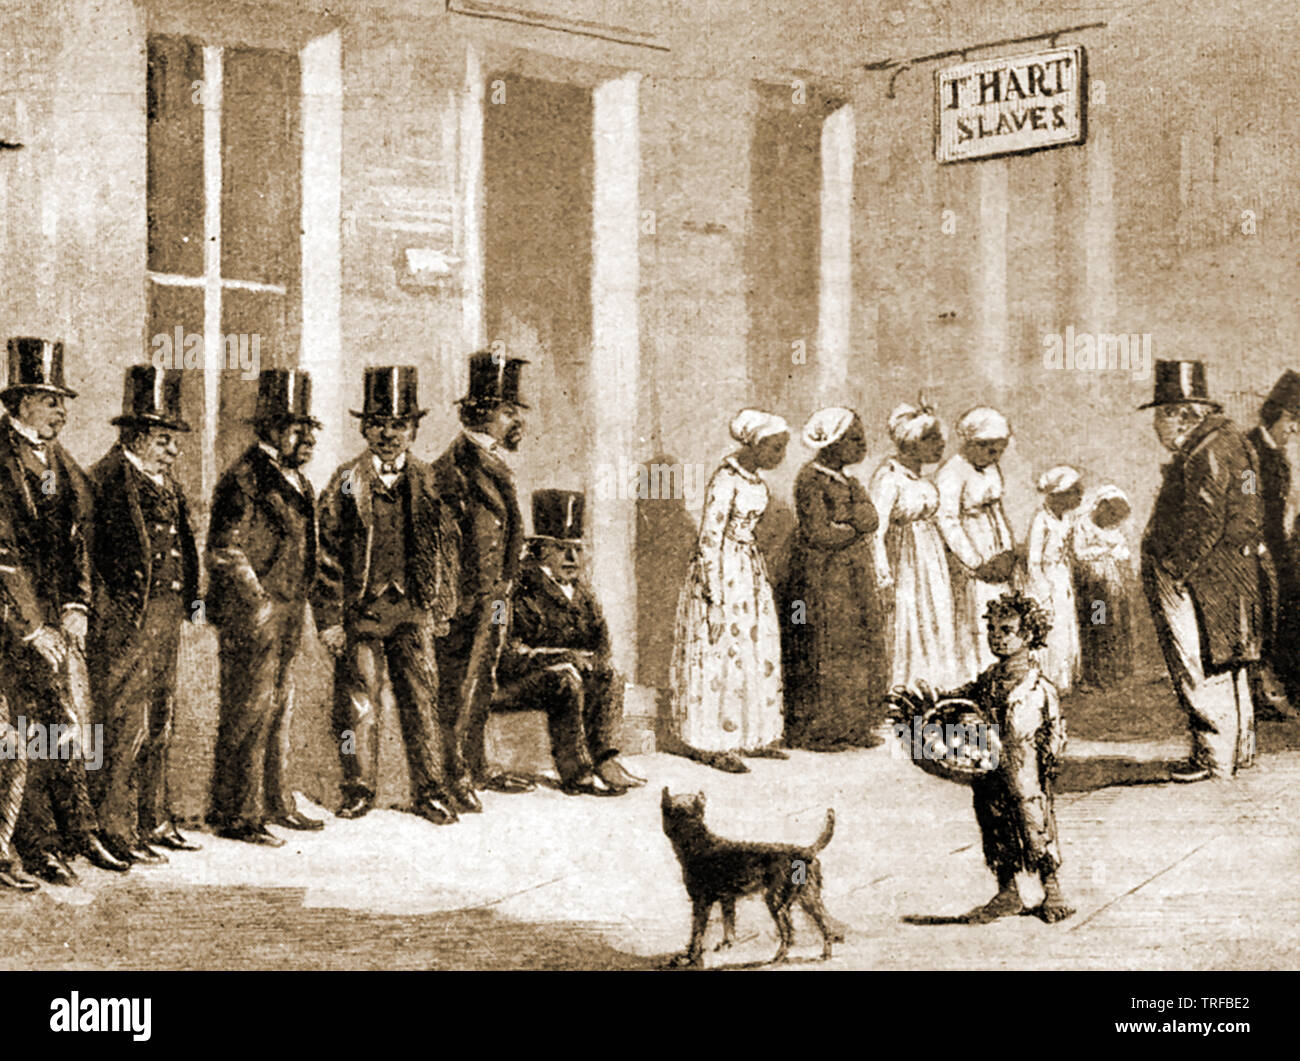 Sklaverei - ein so genanntes 'High Class slave Shop in New Orleans, USA. Von einer Gravur der Zeit. Sklaven waren gut gekleidet, sie zu wohlhabenderen Kunden zu gewinnen. Stockfoto